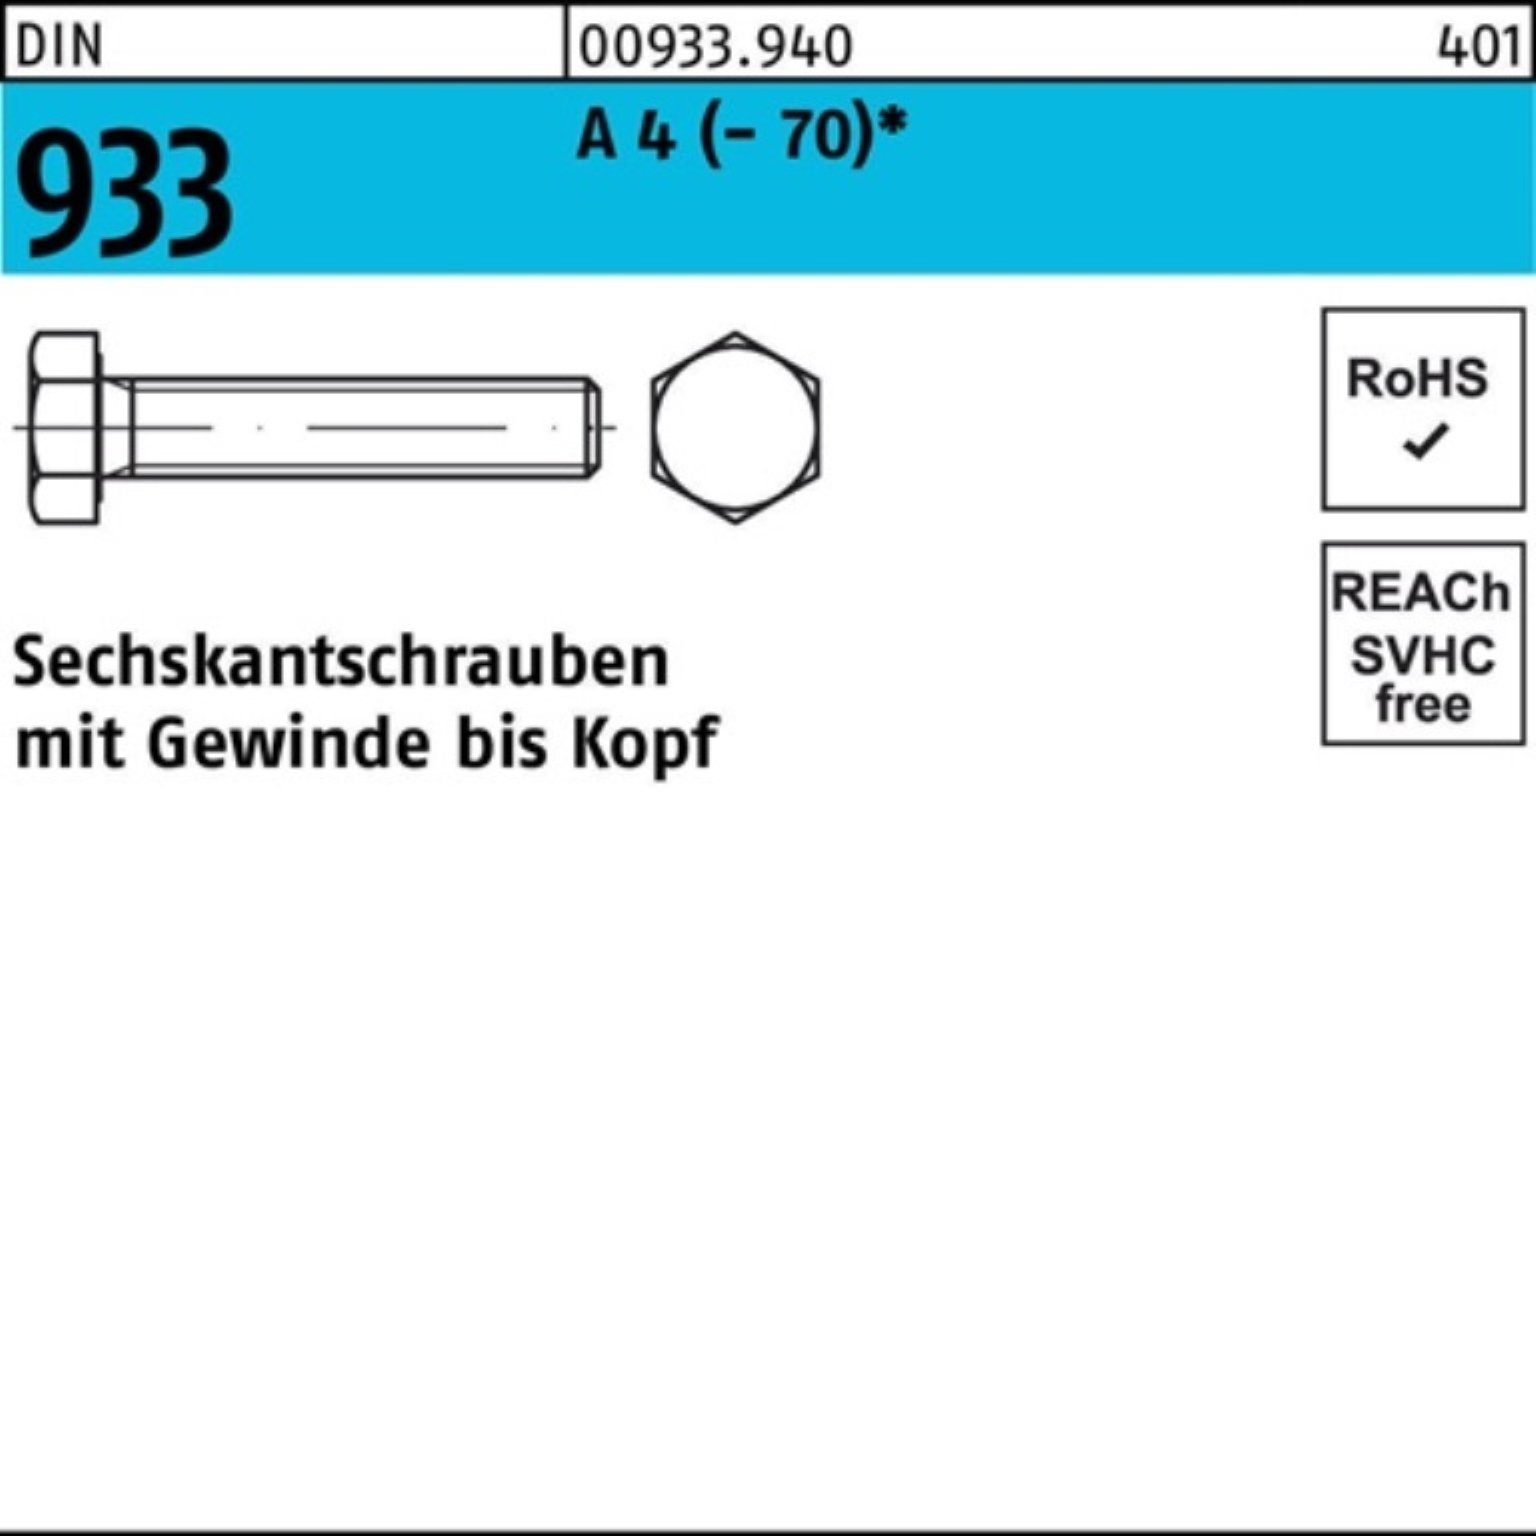 Reyher Sechskantschraube 22 M8x Pack Stück DIN VG 4 A 200 200er 933 D Sechskantschraube (70)